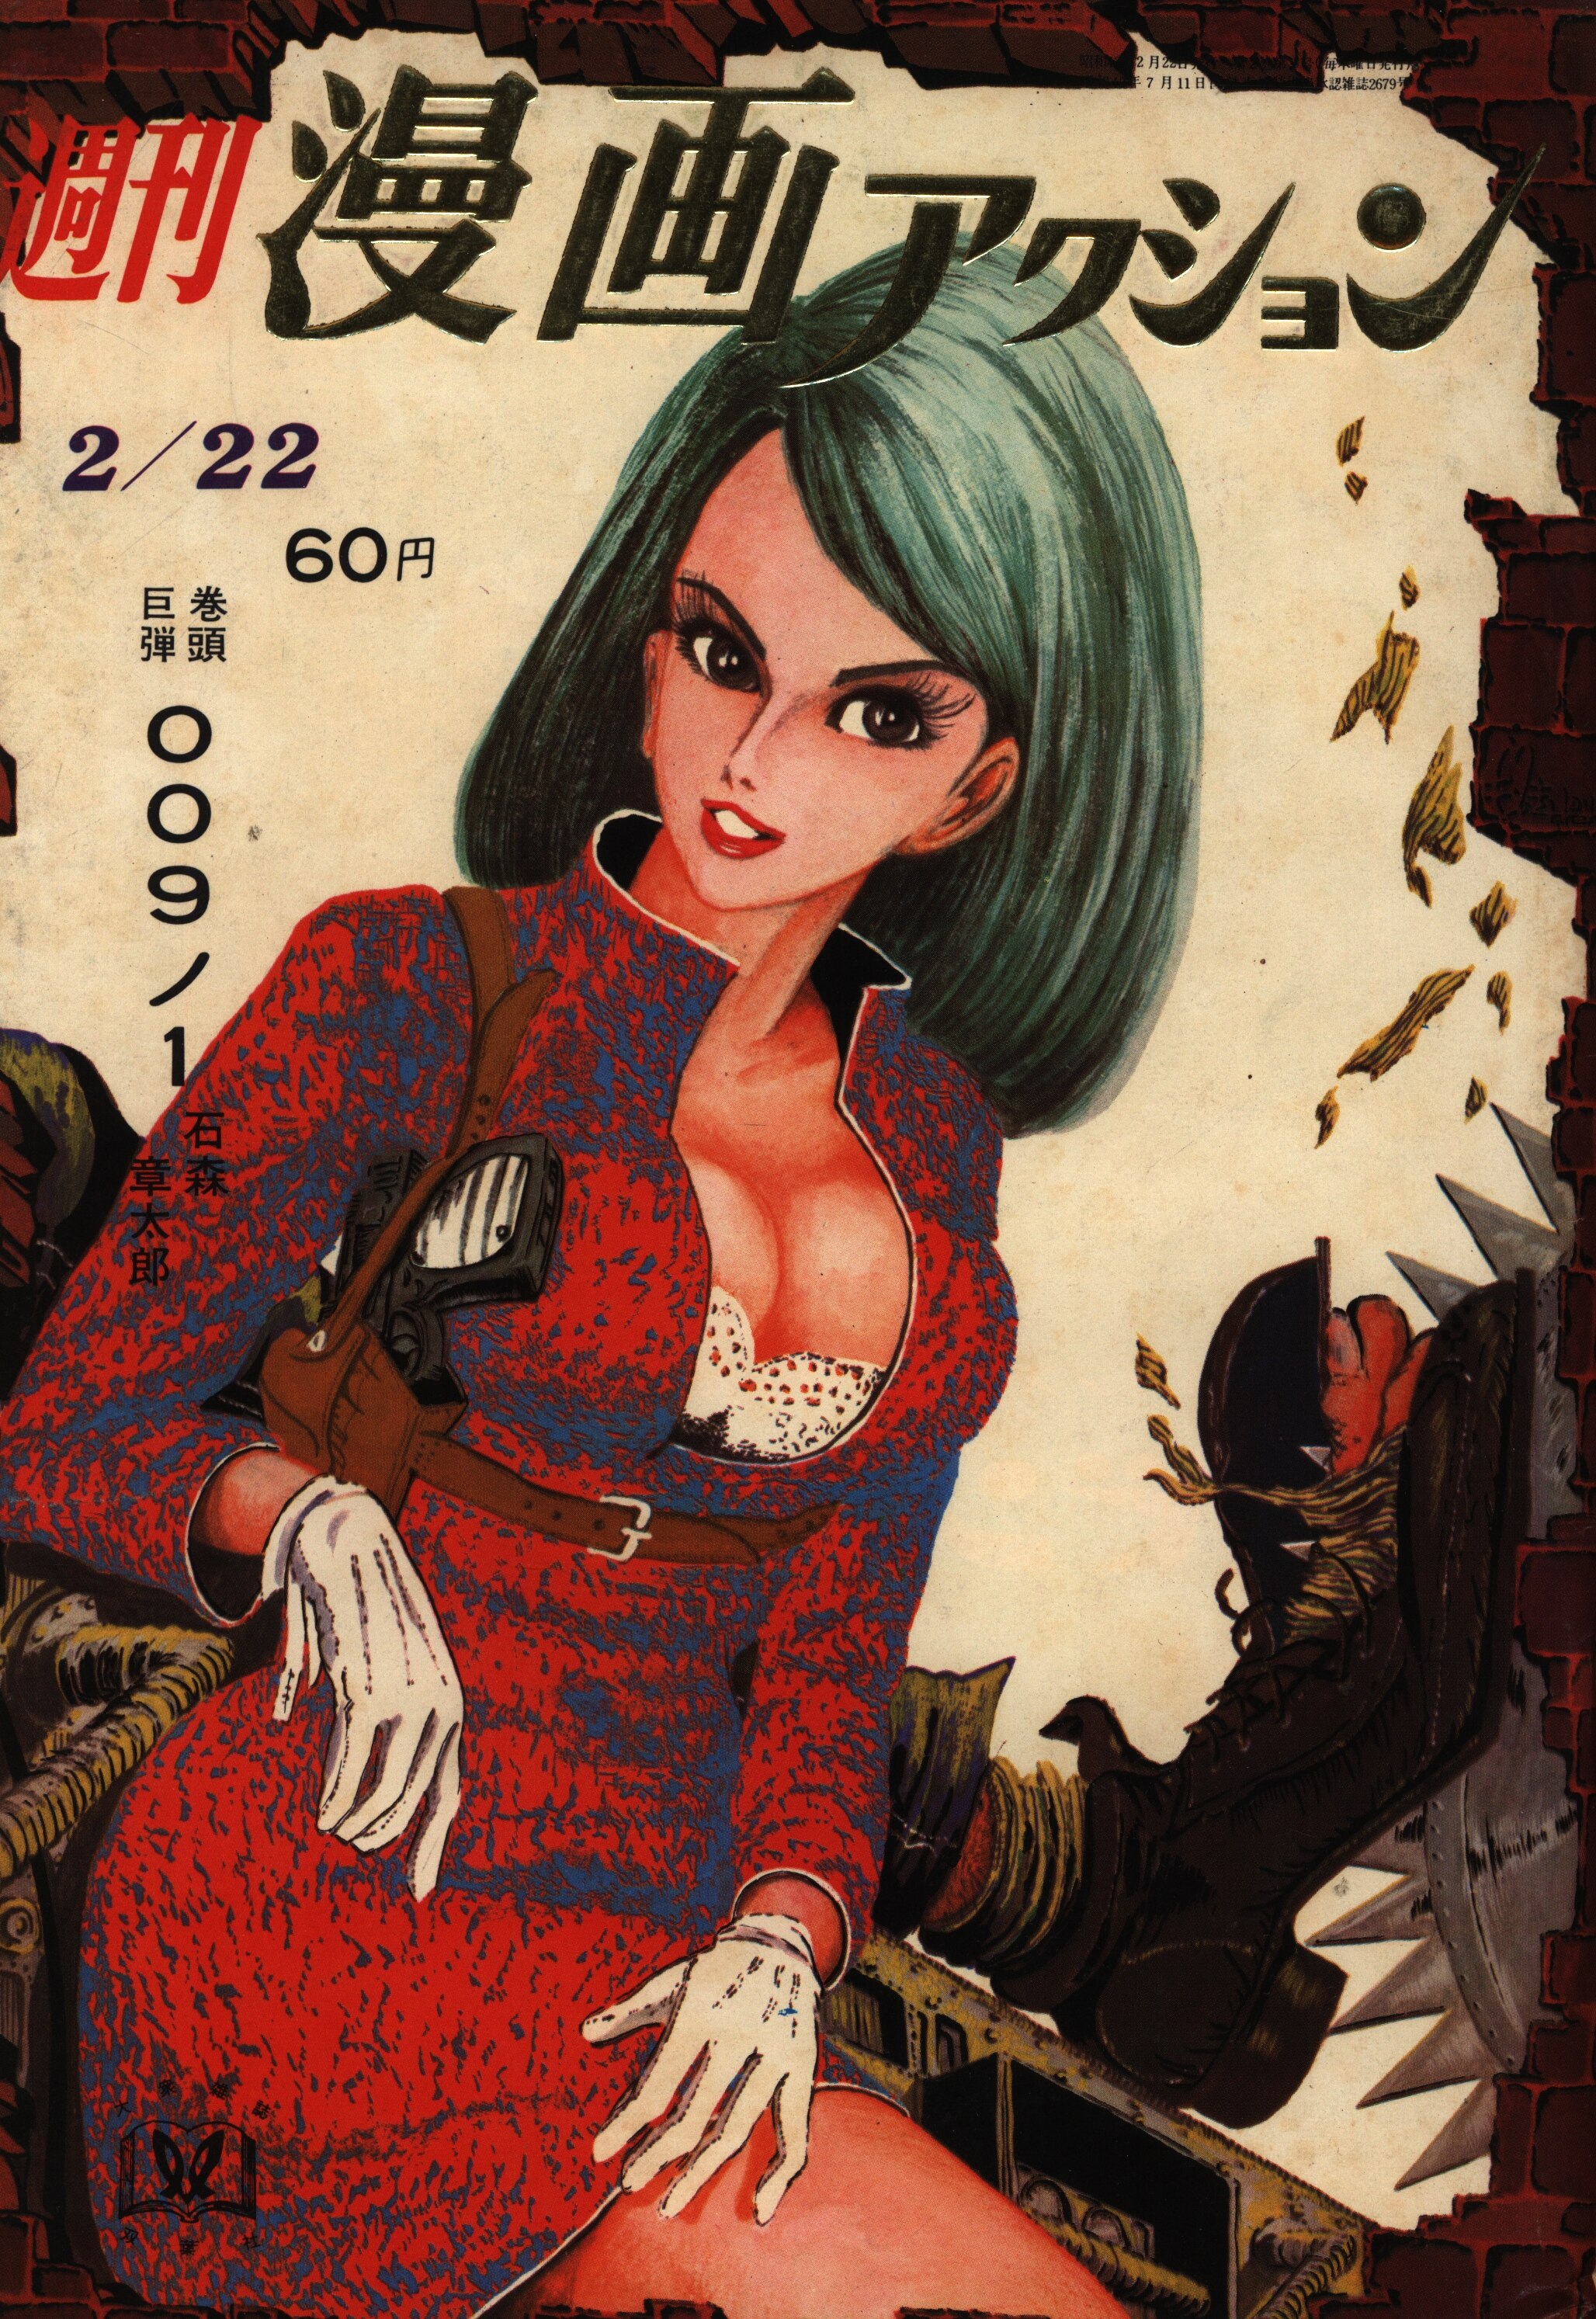 双葉社 1968年(昭和43年)の漫画雑誌 漫画アクション1968/02/22 680222 まんだらけ Mandarake